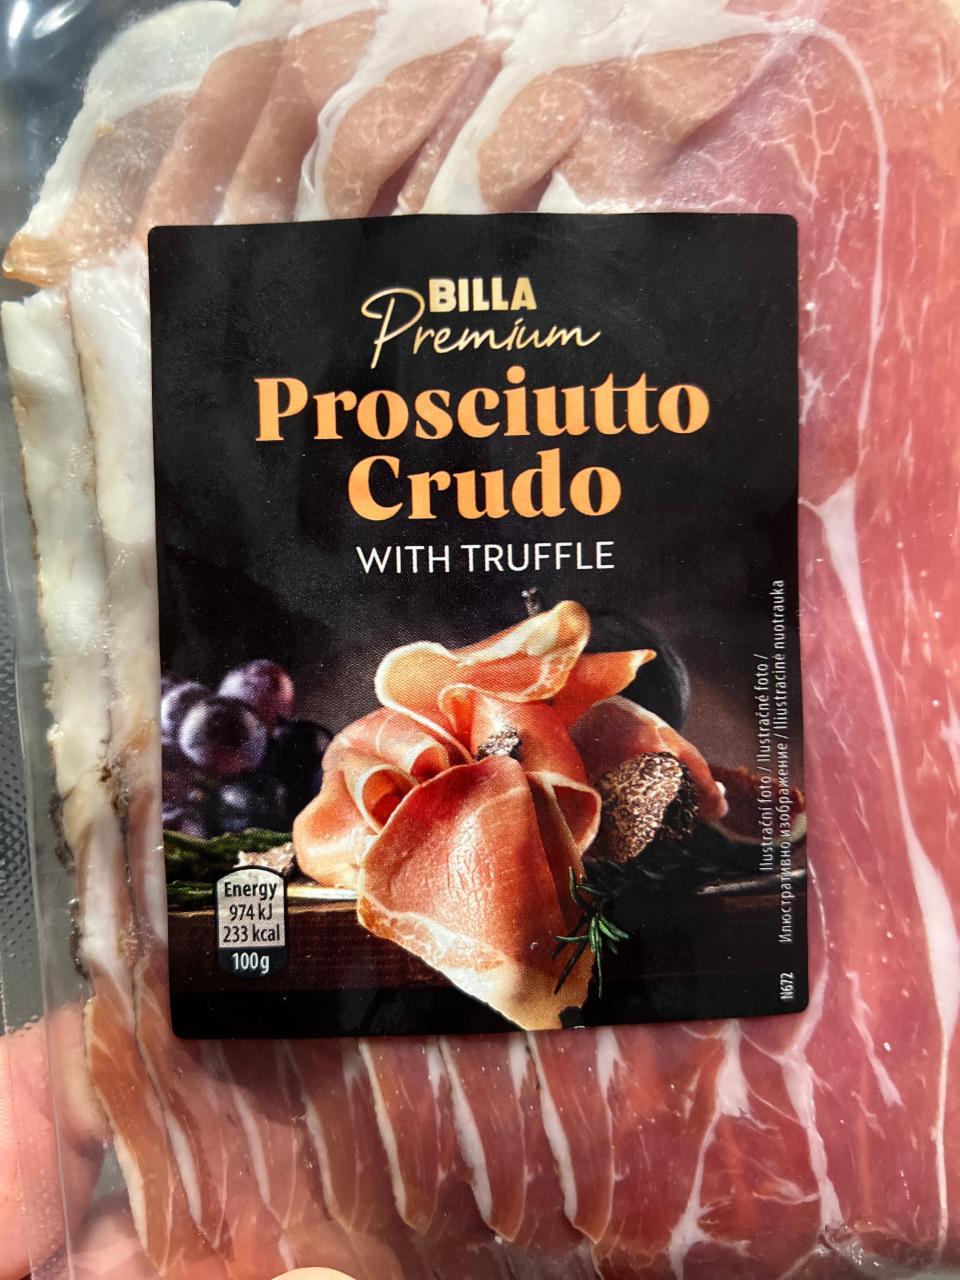 Fotografie - Prosciutto Crudo with truffle Billa Premium